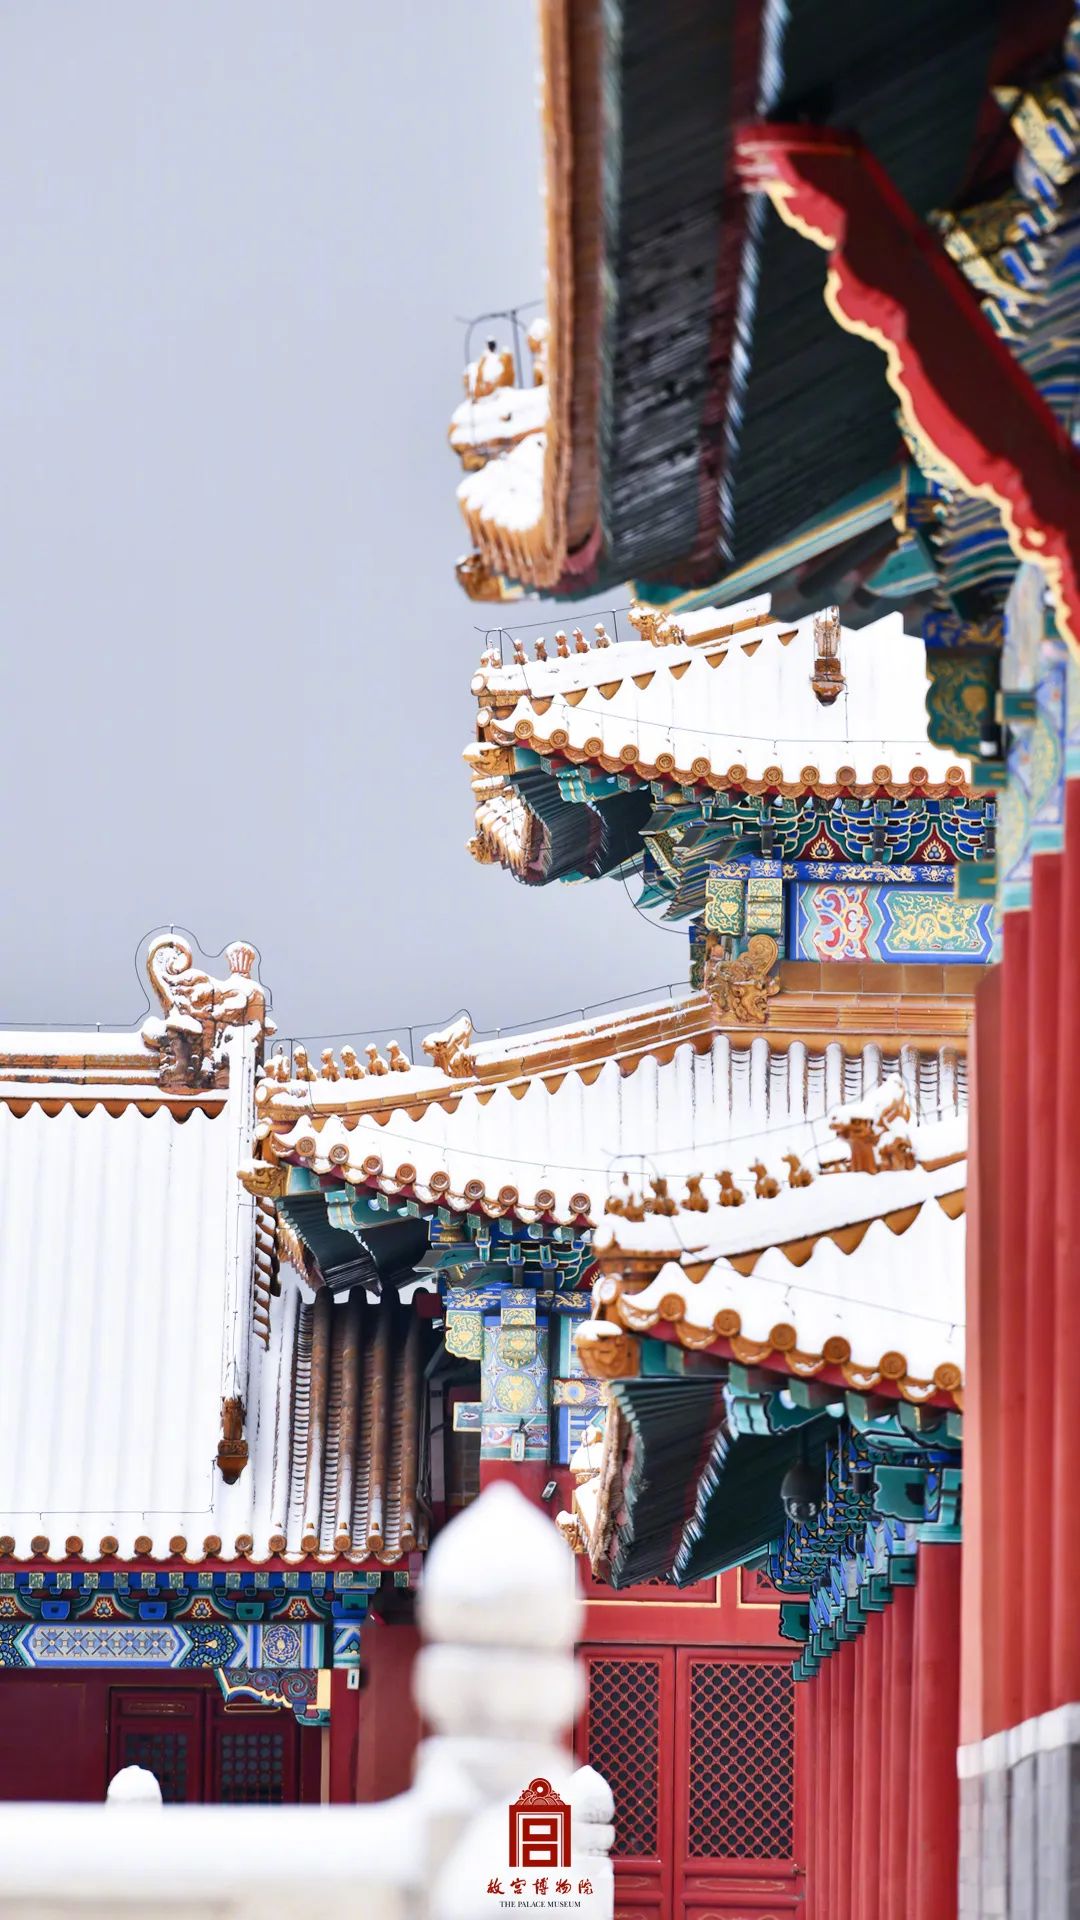 祺然有灵让故宫换上了紫禁城·雪景限定装北京纷纷扬扬的一场大雪